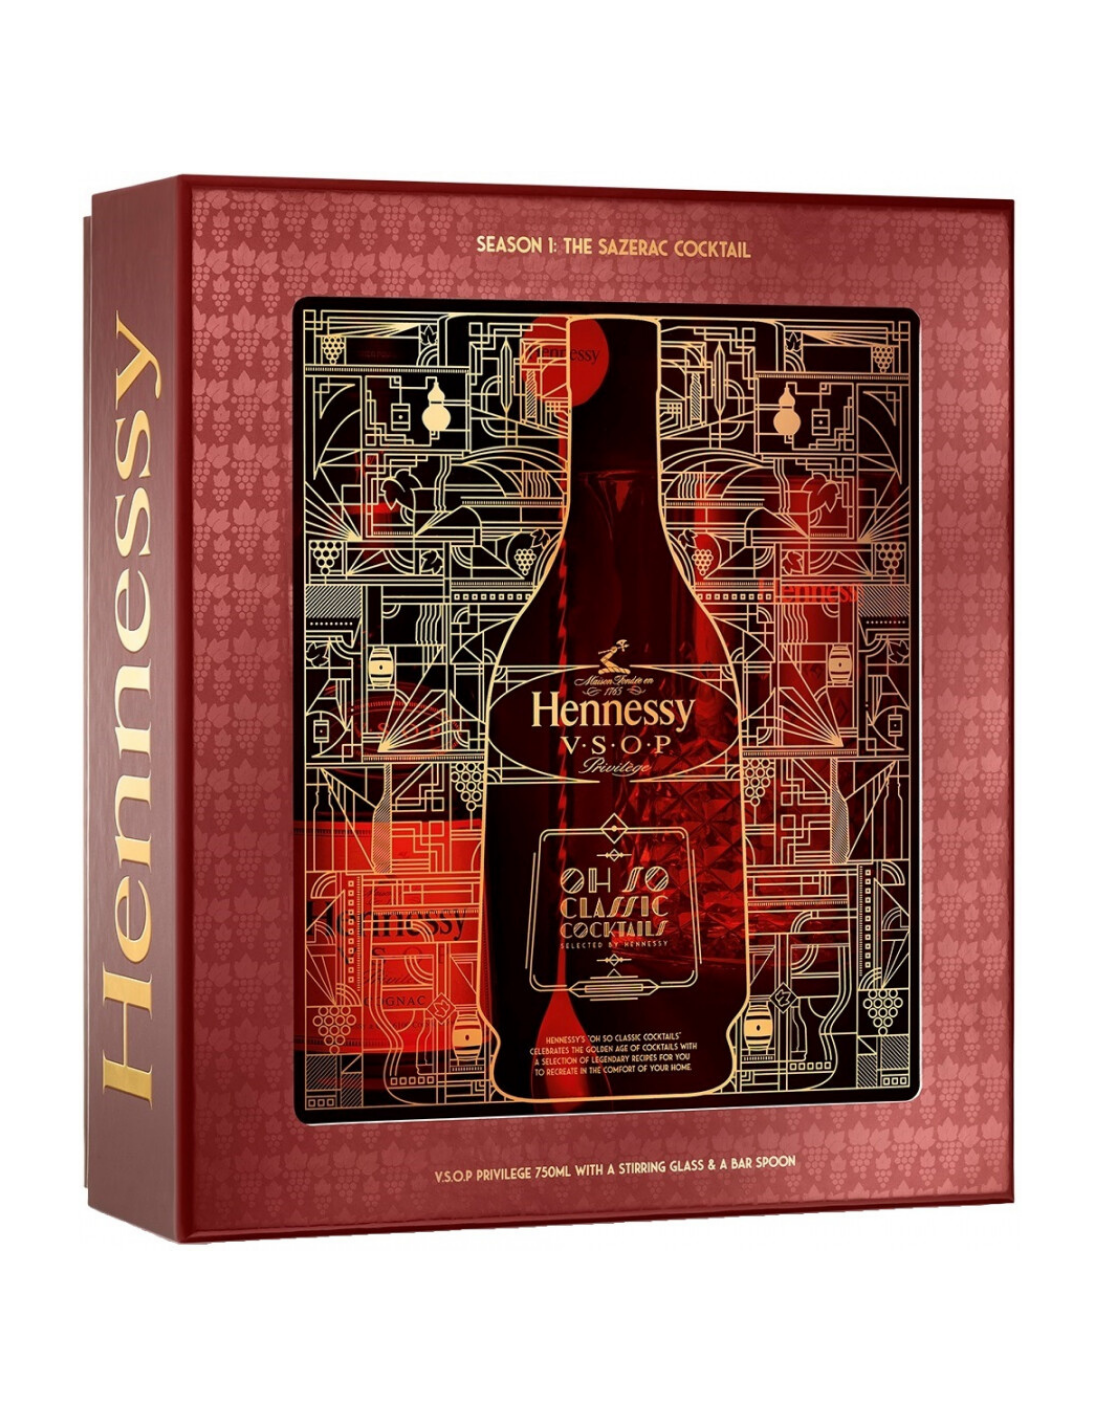 Coniac Hennessy VSOP Privilege + Pahar + Lingura de bar, 40% alc., 0.7L, Franta alcooldiscount.ro